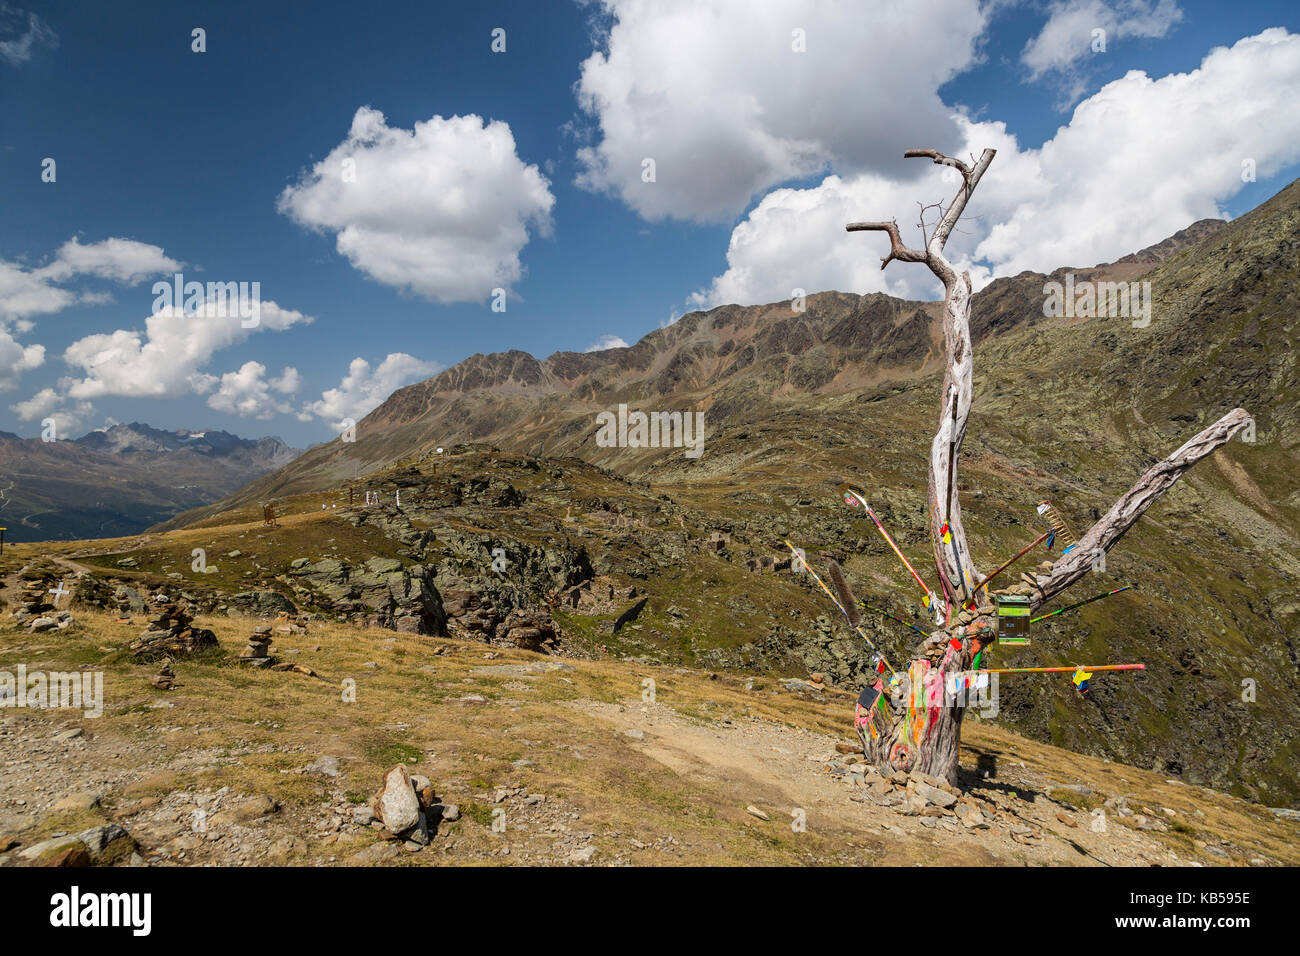 Europe, Autriche/Italie, Alpes, montagnes, vue de Passo Rombo - Timmelsjoch Banque D'Images